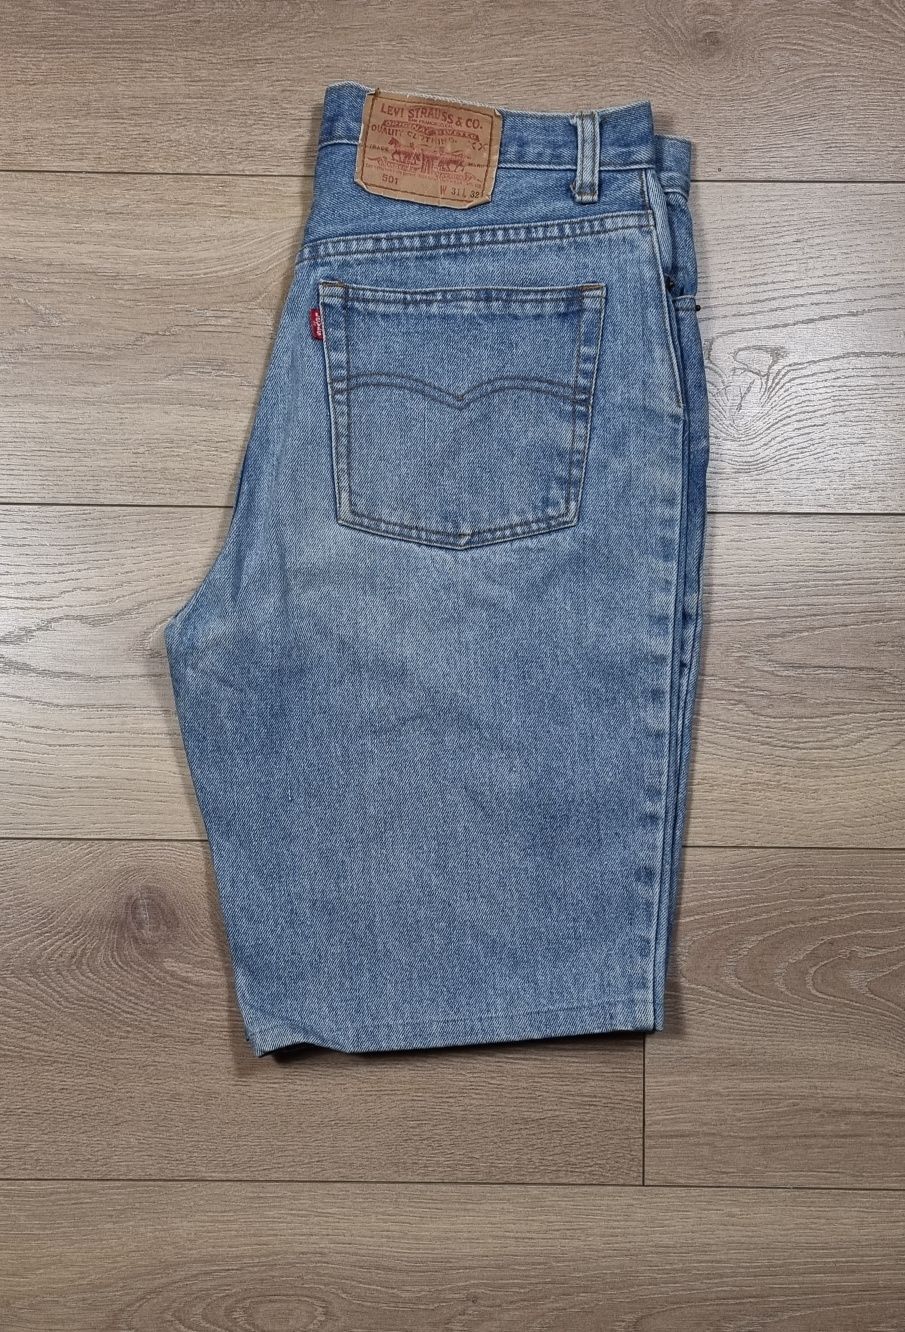 Spodenki męskie Levi's Strauss 501, szorty, jeansowe, dżinsy, vintage